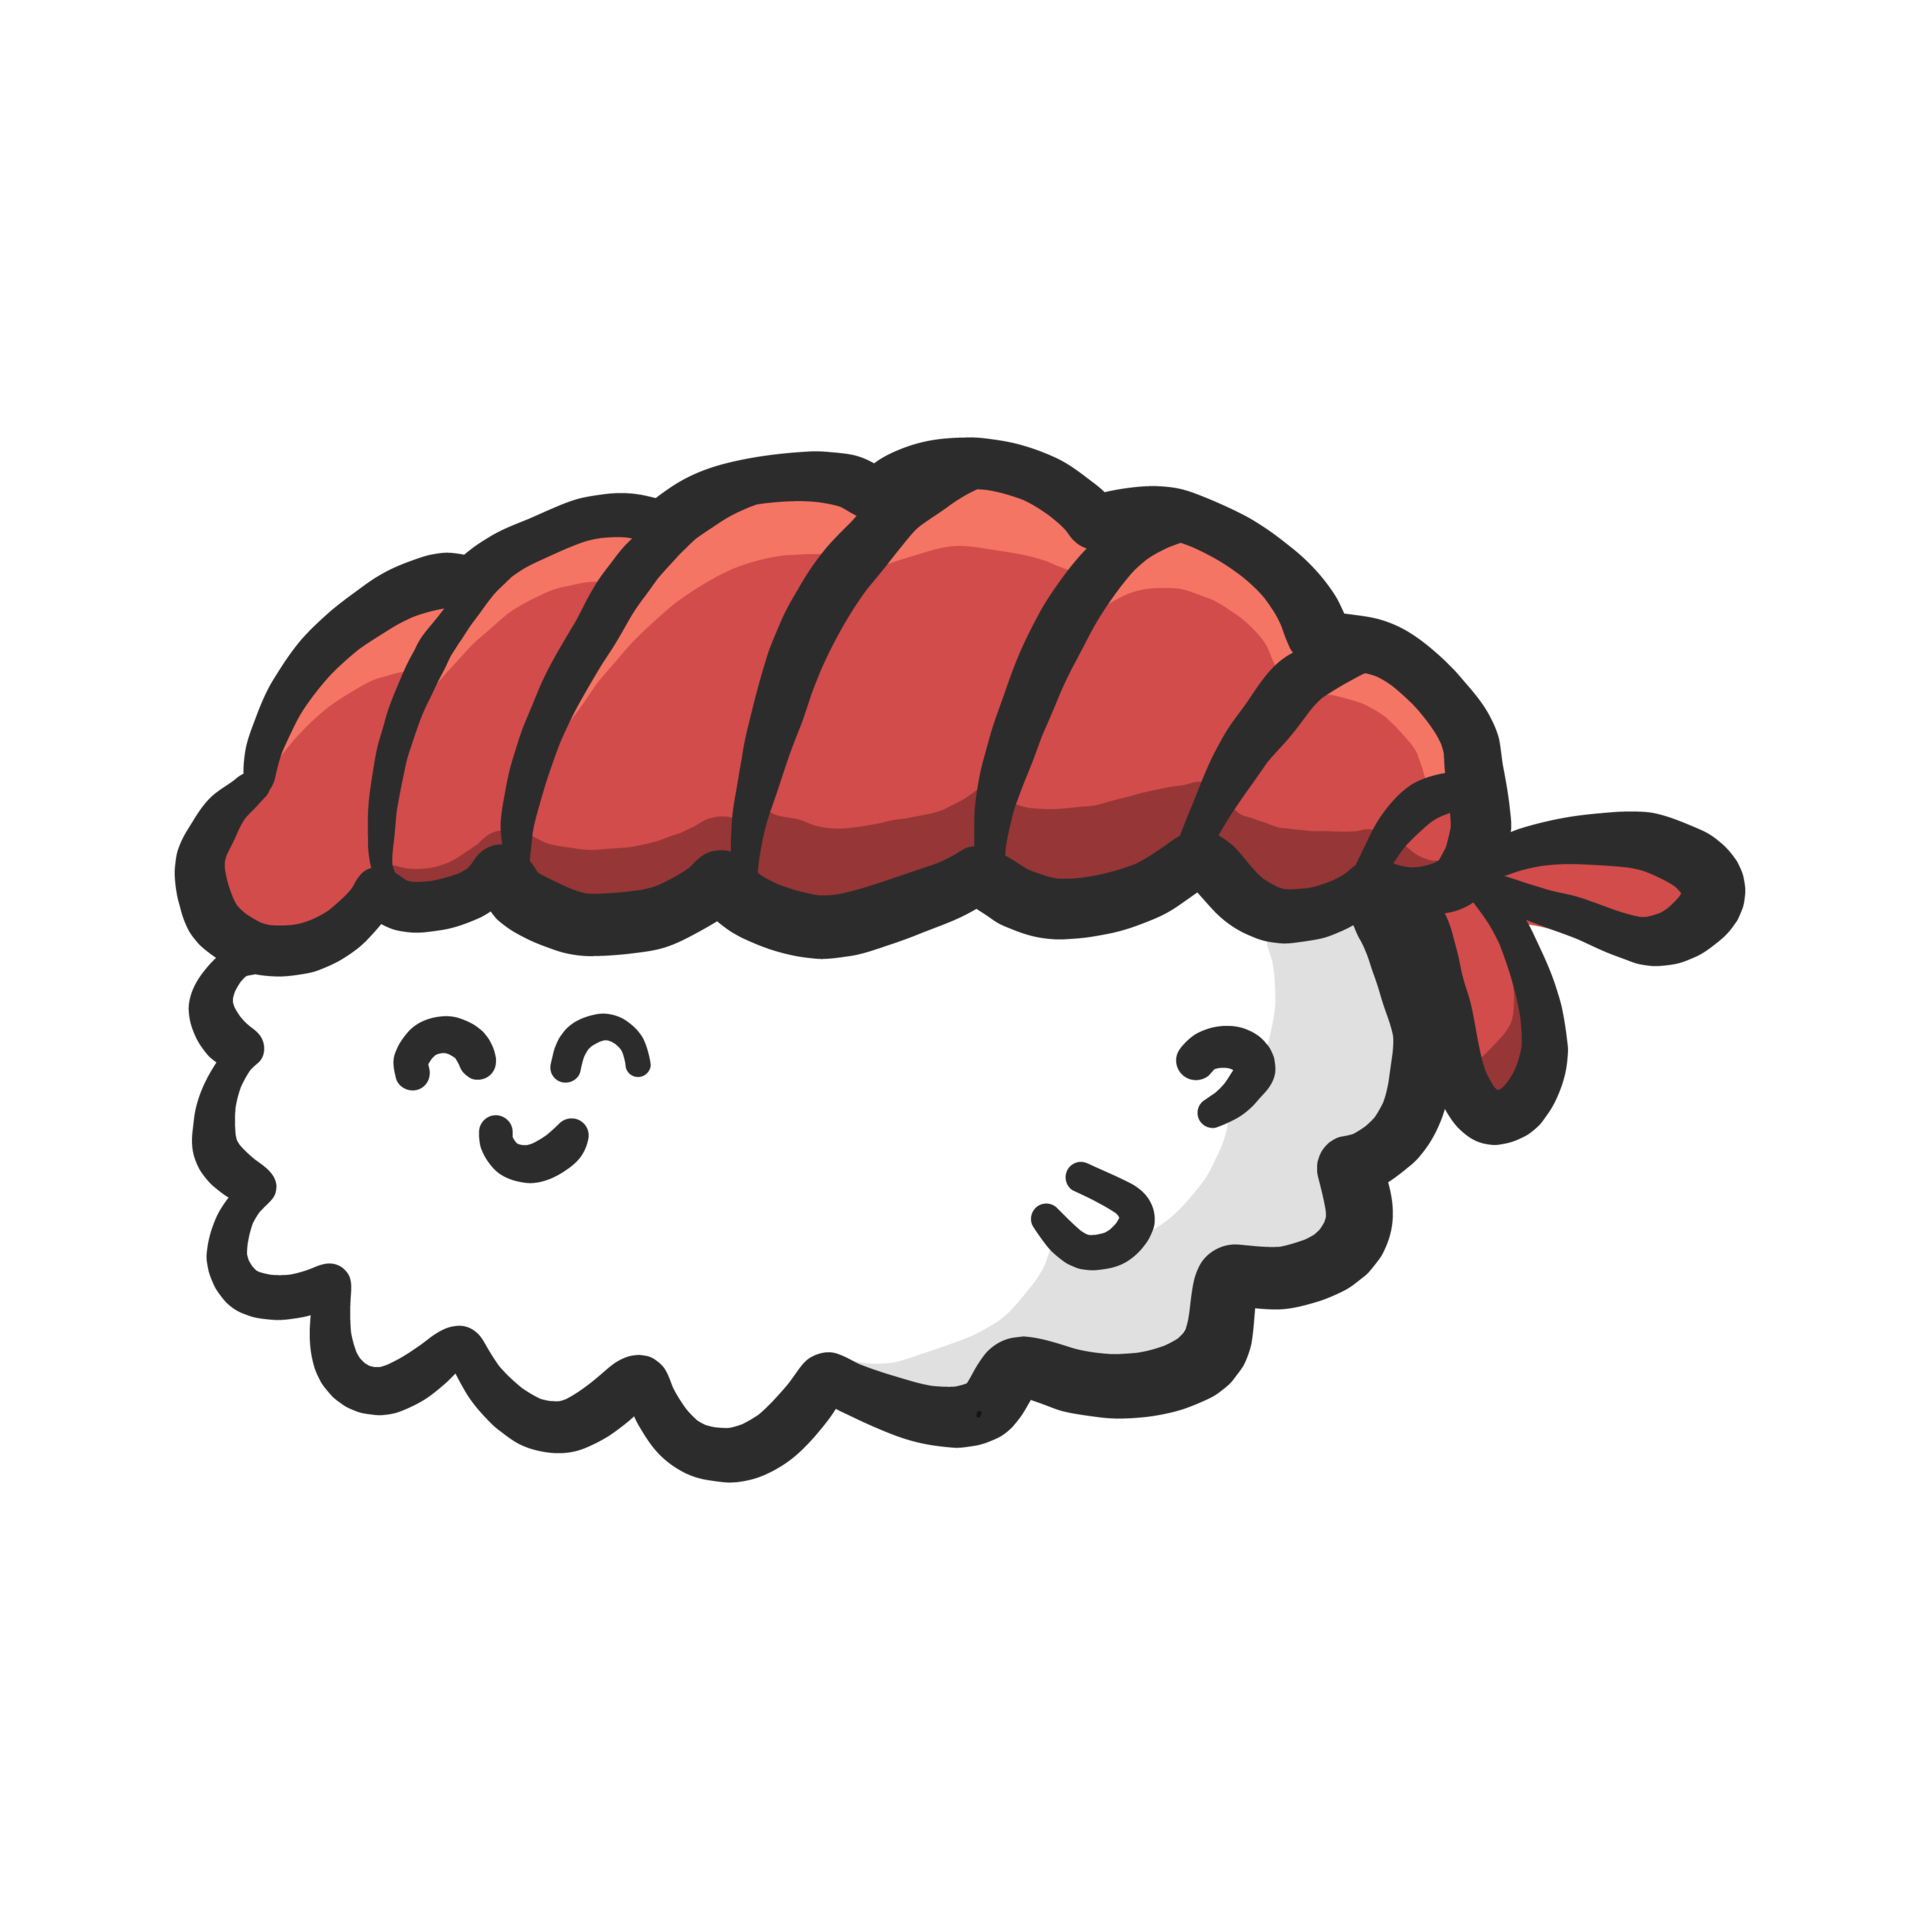 Free lindo personaje de comida. comida japonesa tradicional de sushi  divertido en dibujos animados. ilustración kawaii para emoticono, símbolo,  icono, etc. 10949873 PNG with Transparent Background